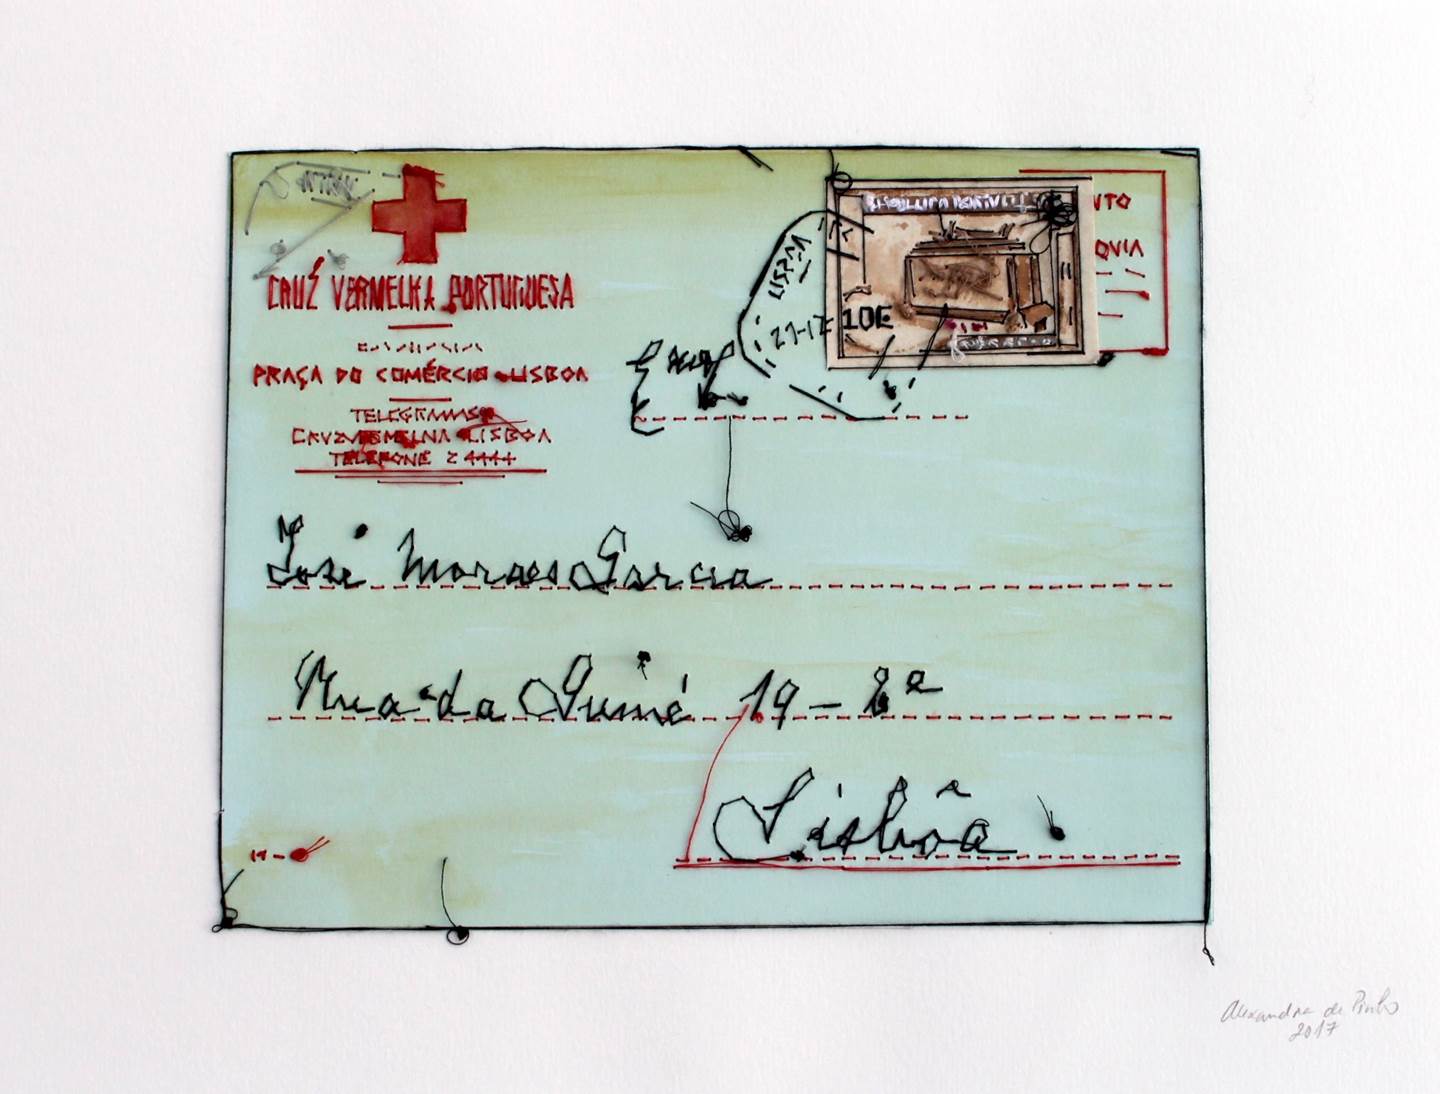 Telegrama da Cruz Vermelha, original   Dessin et illustration par Alexandra de Pinho